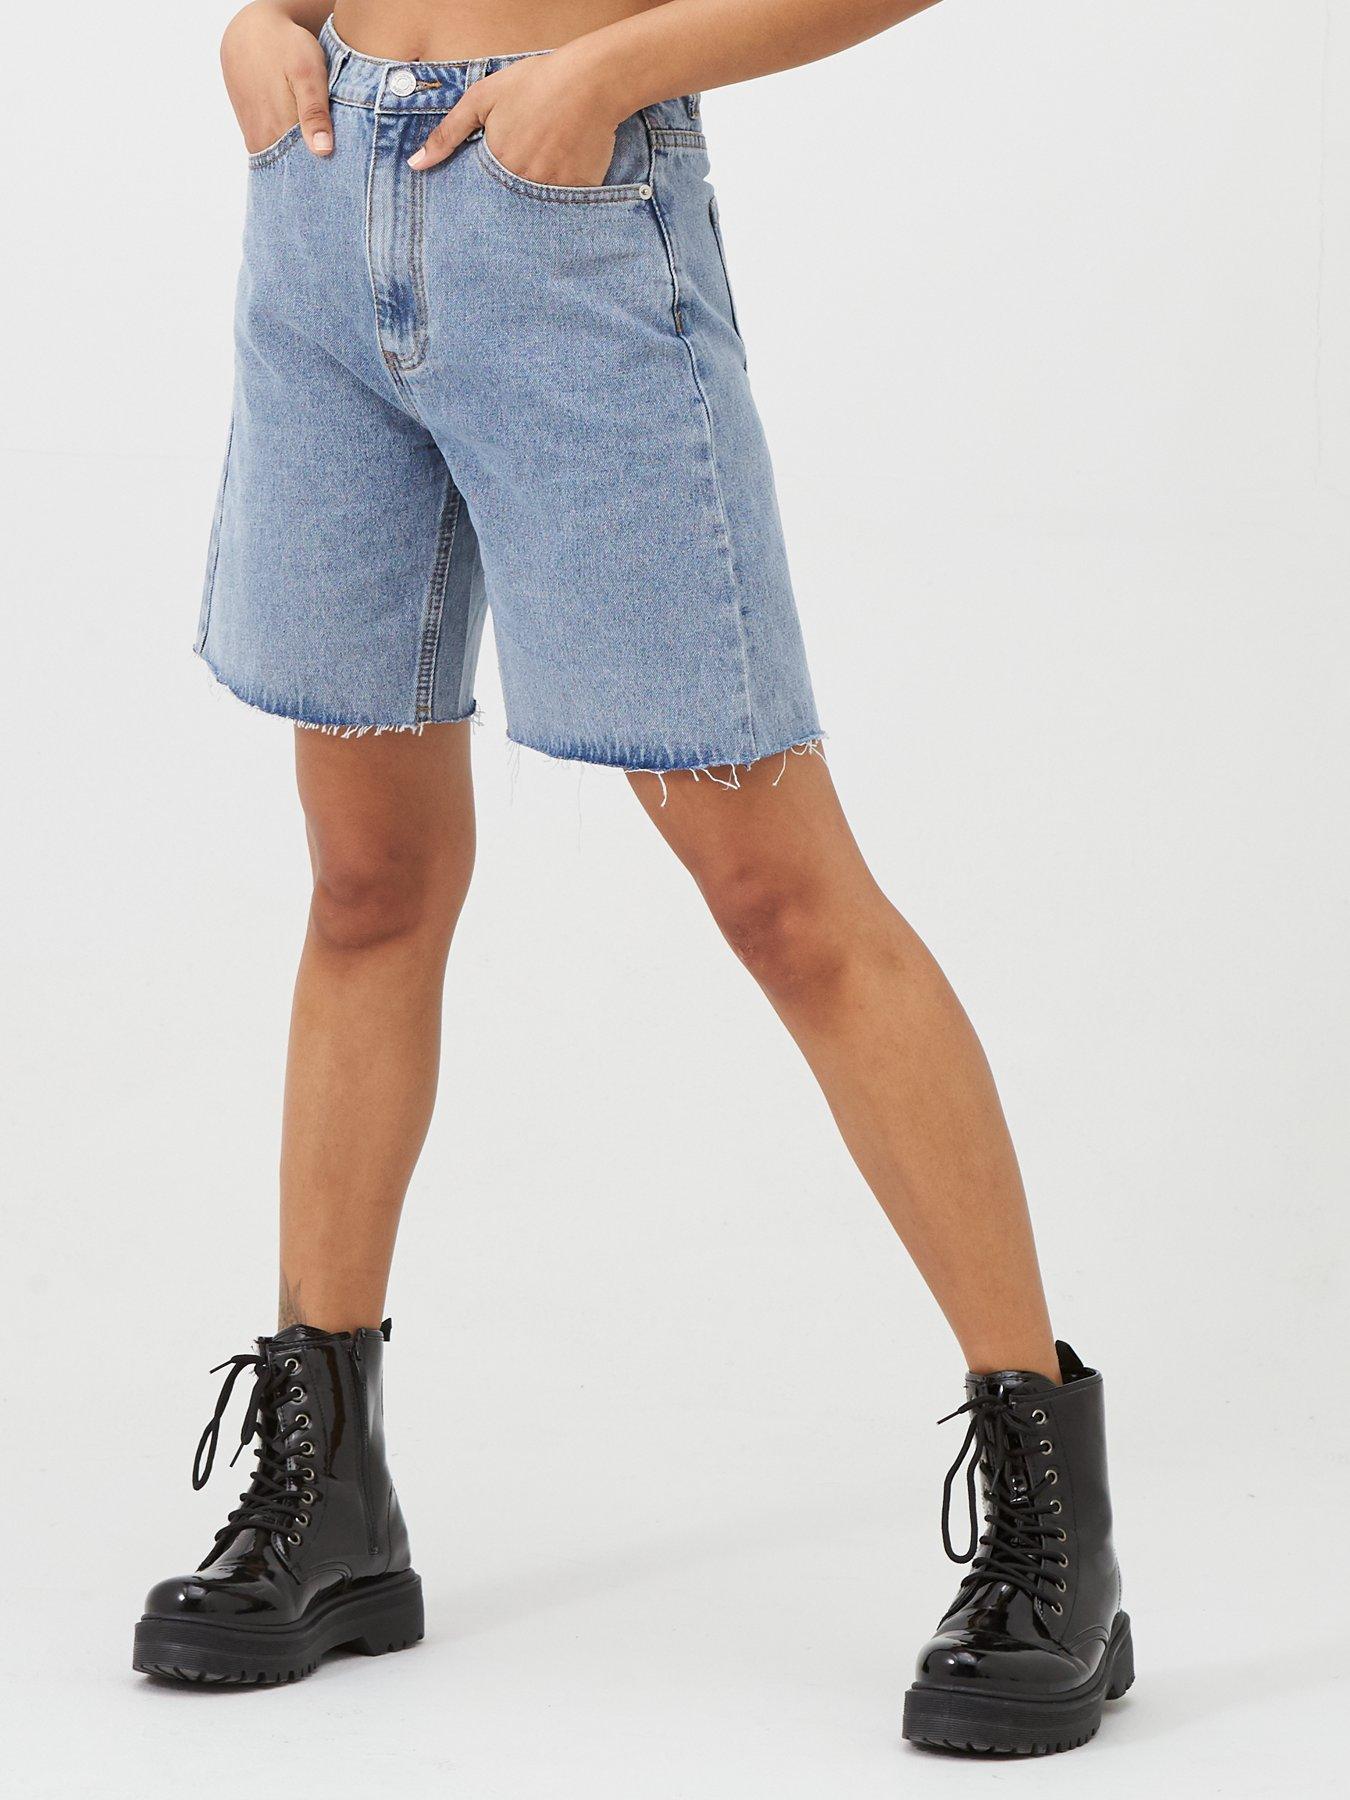 longline jean shorts